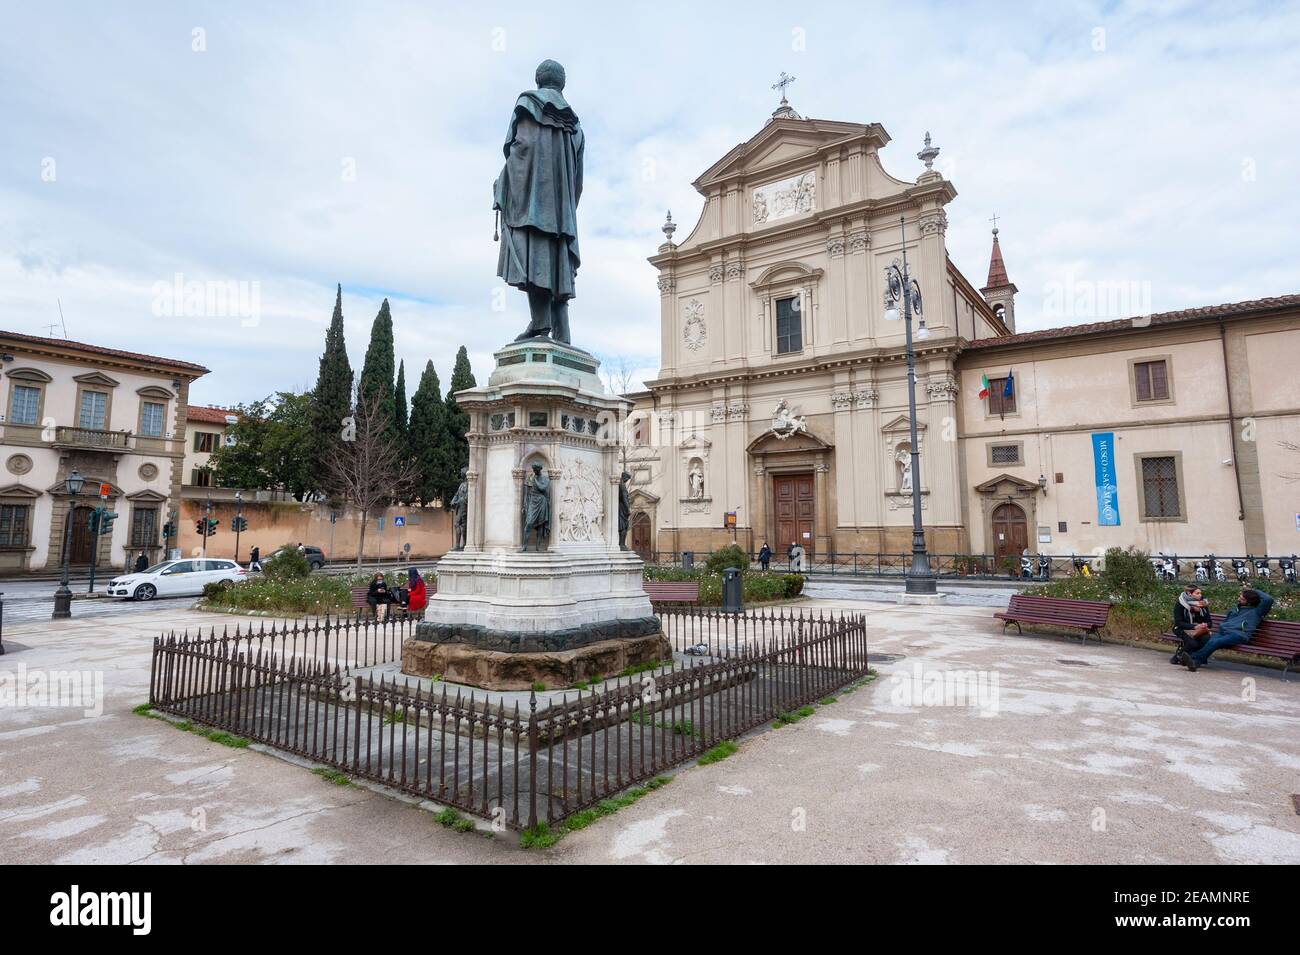 Florenz, Italien - 2021. Januar 31: Piazza San Marco mit seiner Barockkirche. Manfredo Fanti Bronzestatue in der Mitte des Platzes. Stockfoto